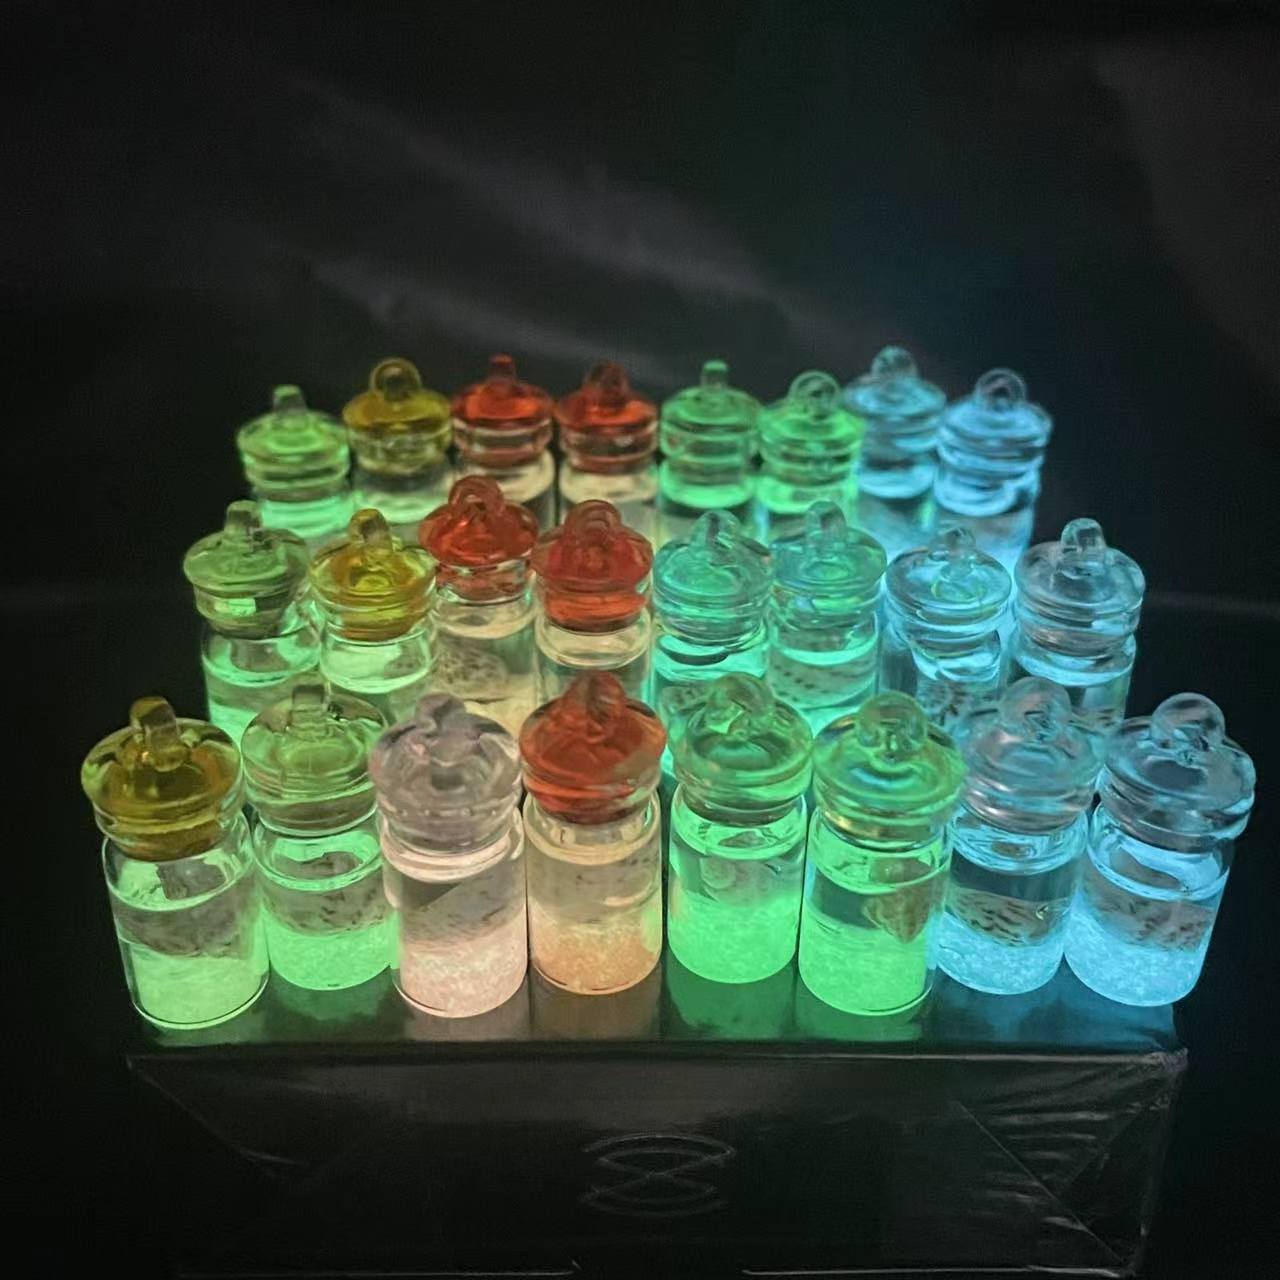 Random Color Glass Conch Shell Ocean Drift Bottle Charms Pendant